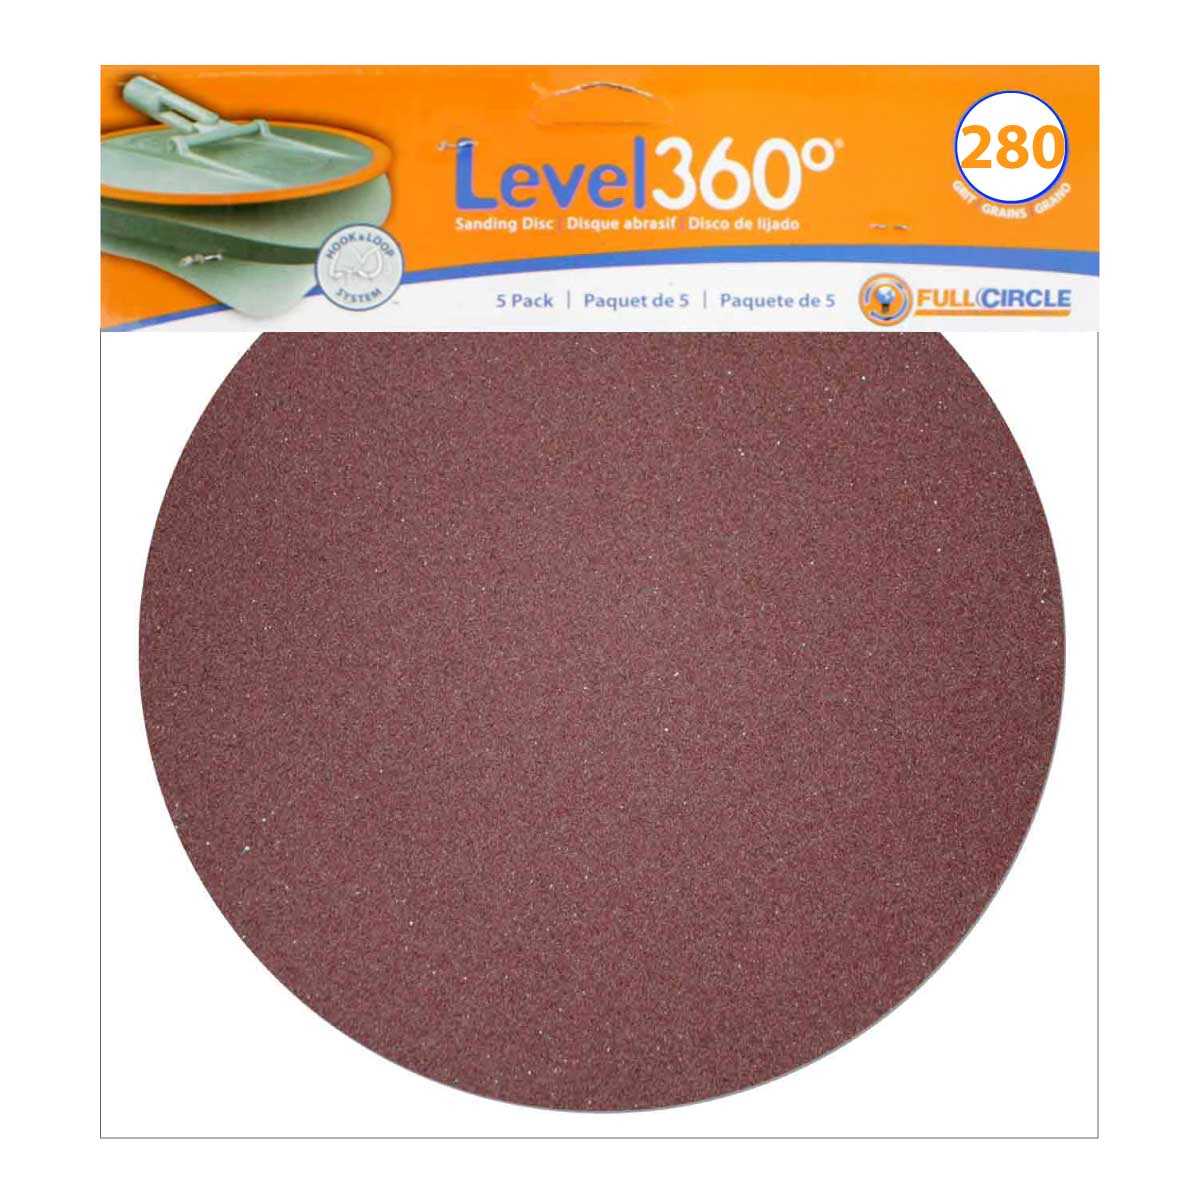 Level 360 Sanding Discs 280